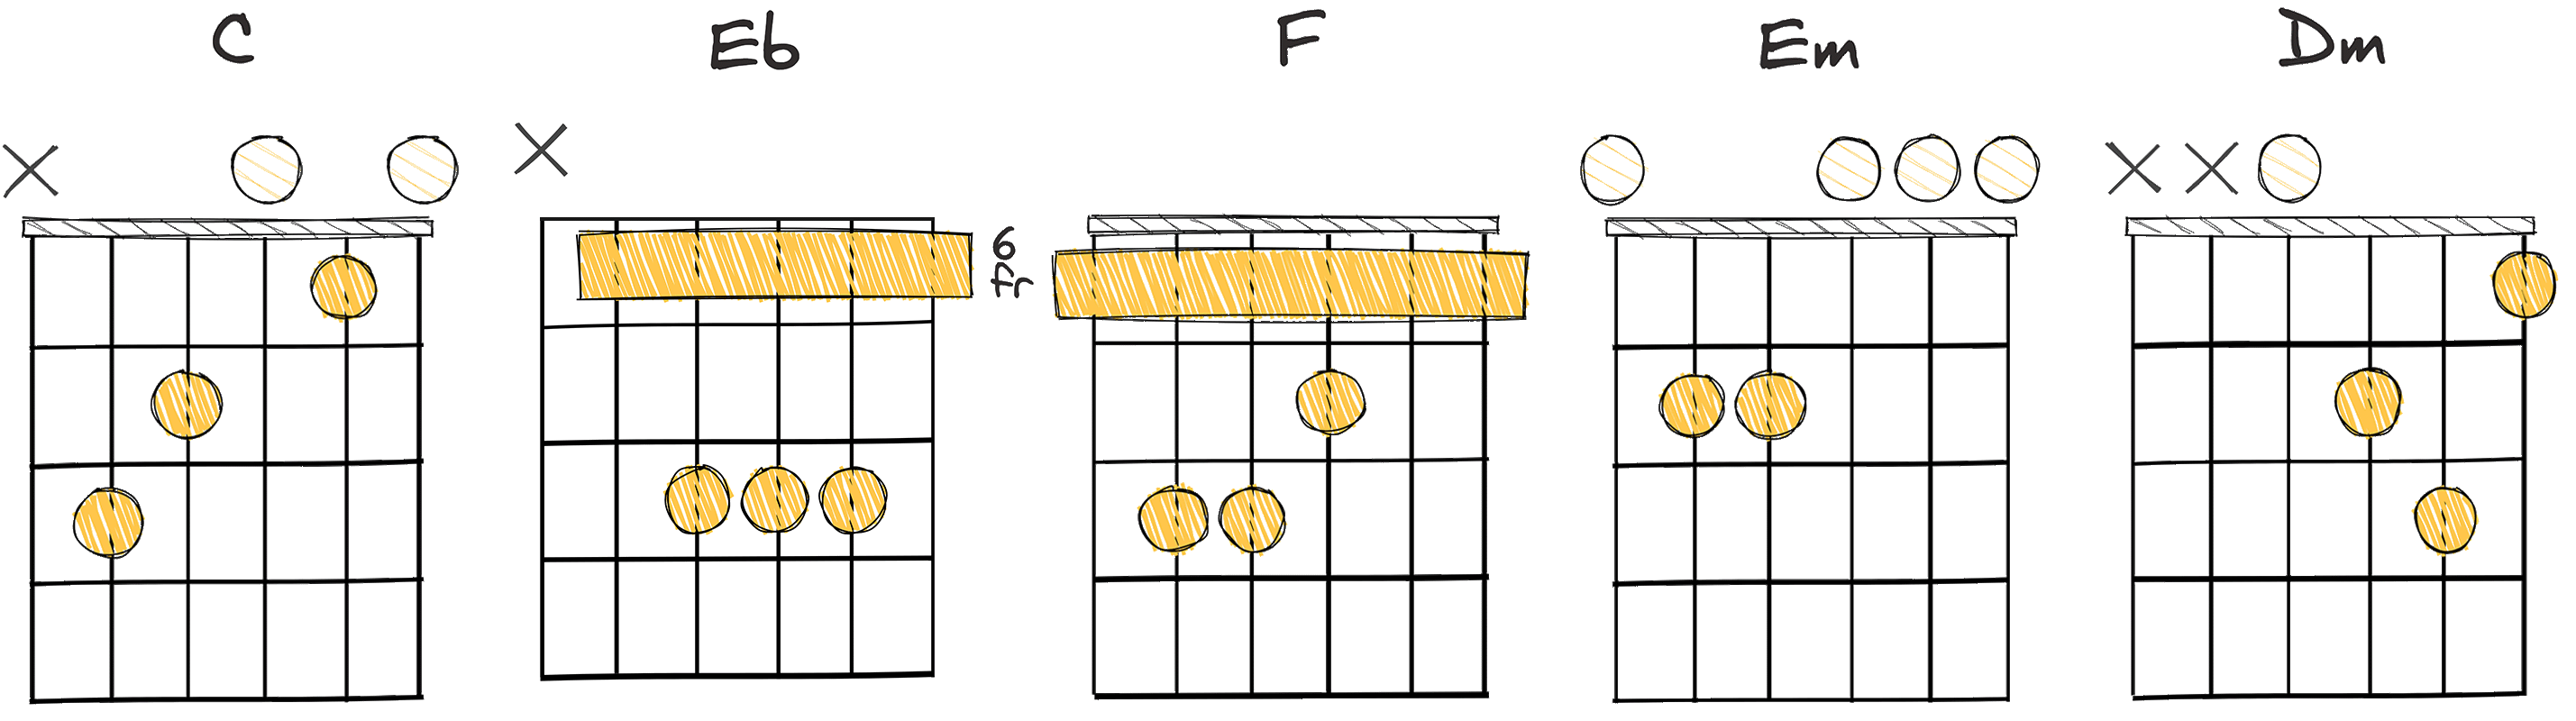 I - bIII - IV - III - II (1 - flat3 - 4 - 3 - 2) chords diagram